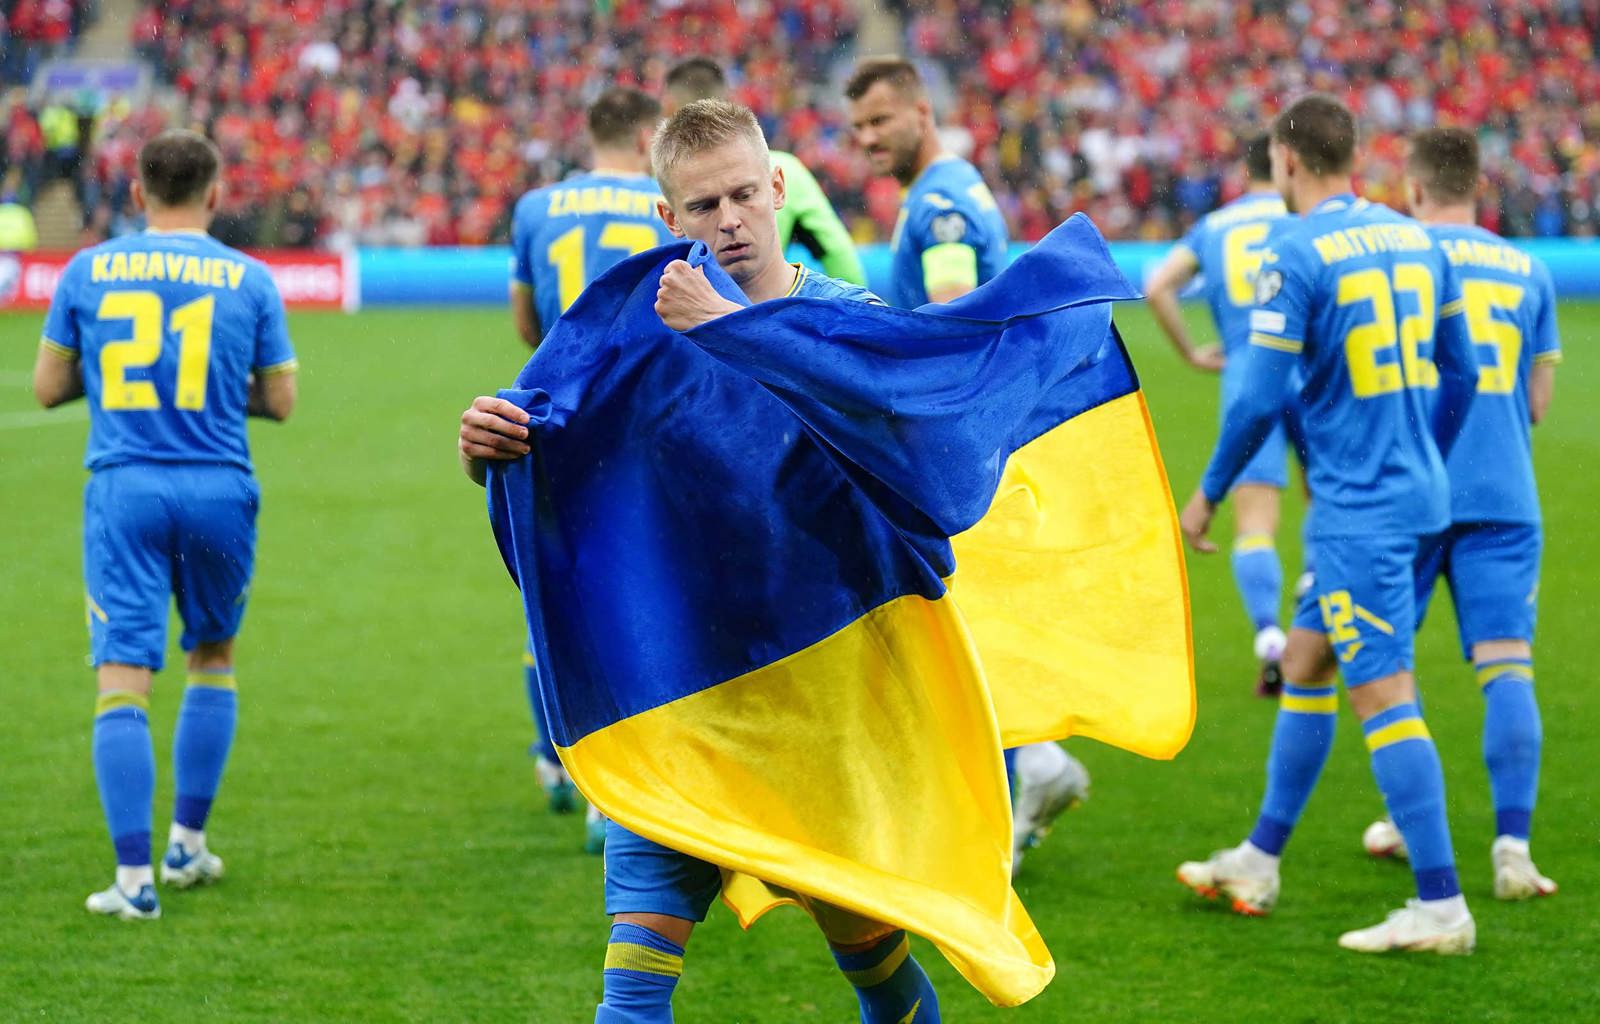 zinchenko nuk fsheh emocionet per kualifikimin ne europian fitore per ukrainen